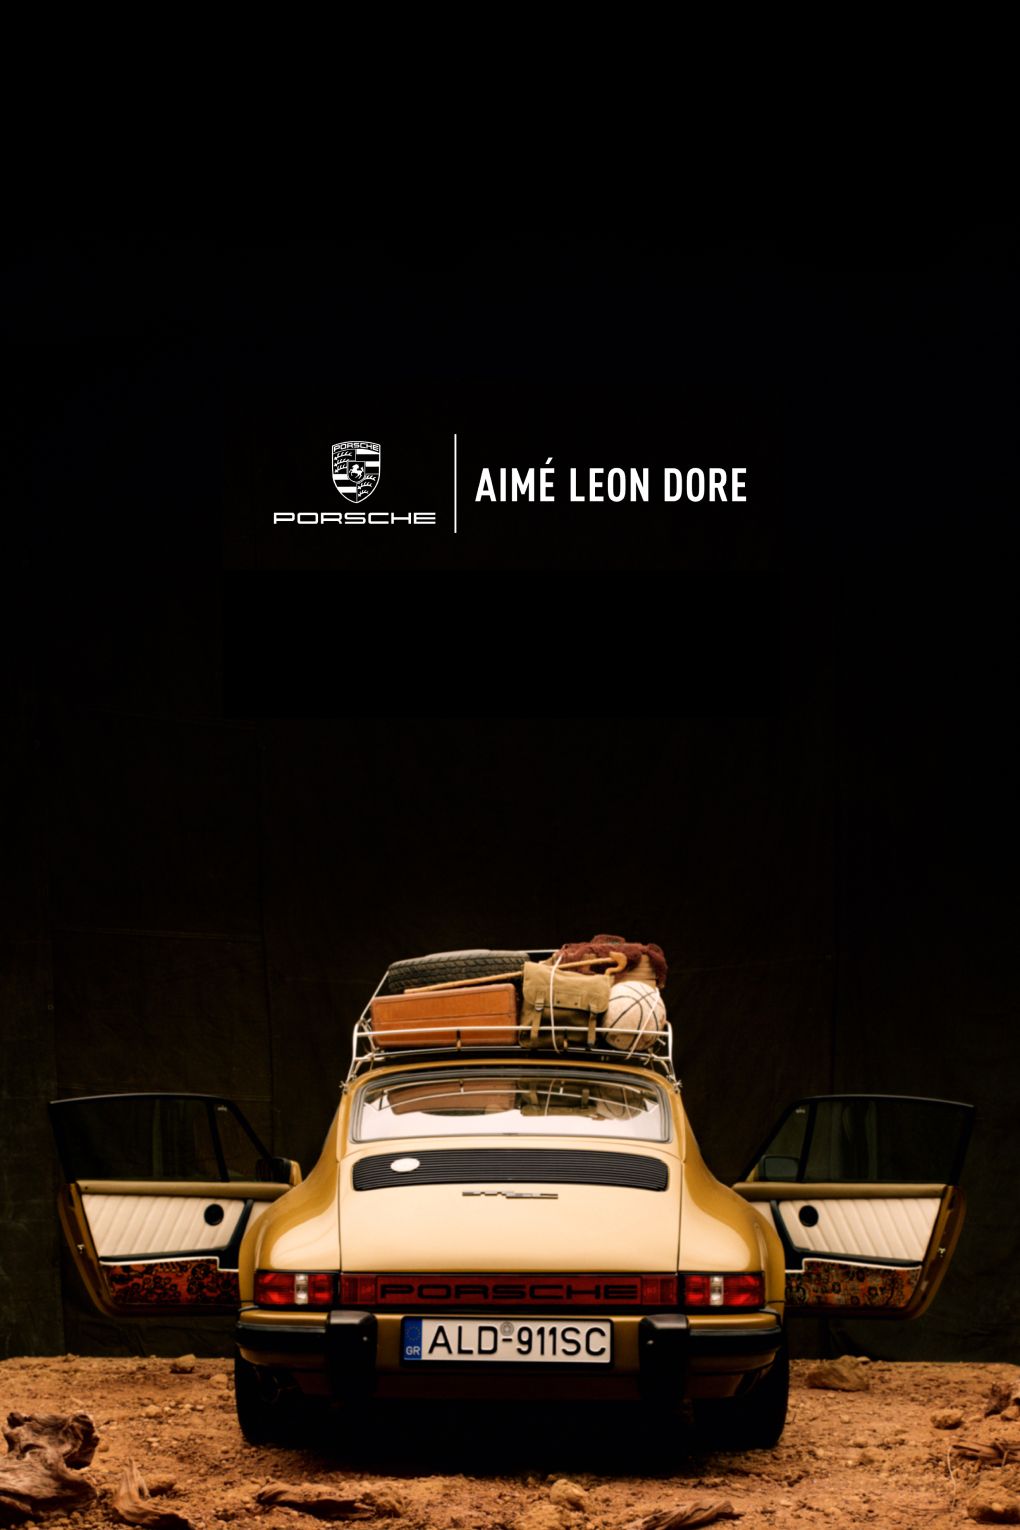 The Aimé Leon Dore Porsche 911SC